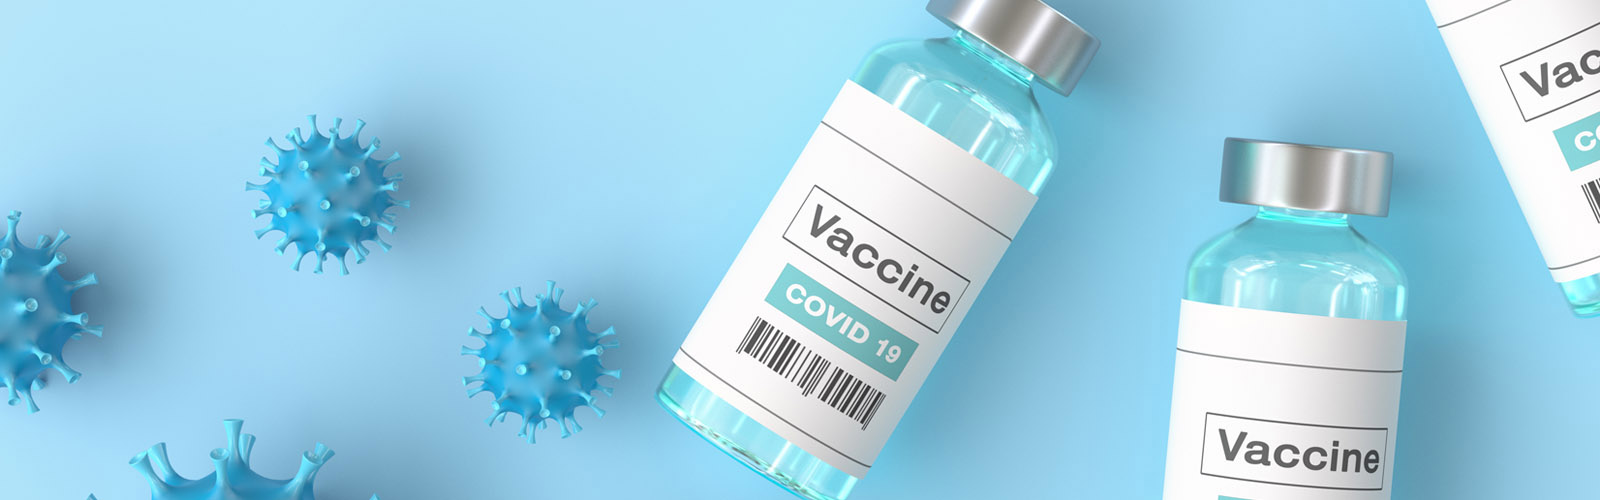 COVID-19 vaccine viles